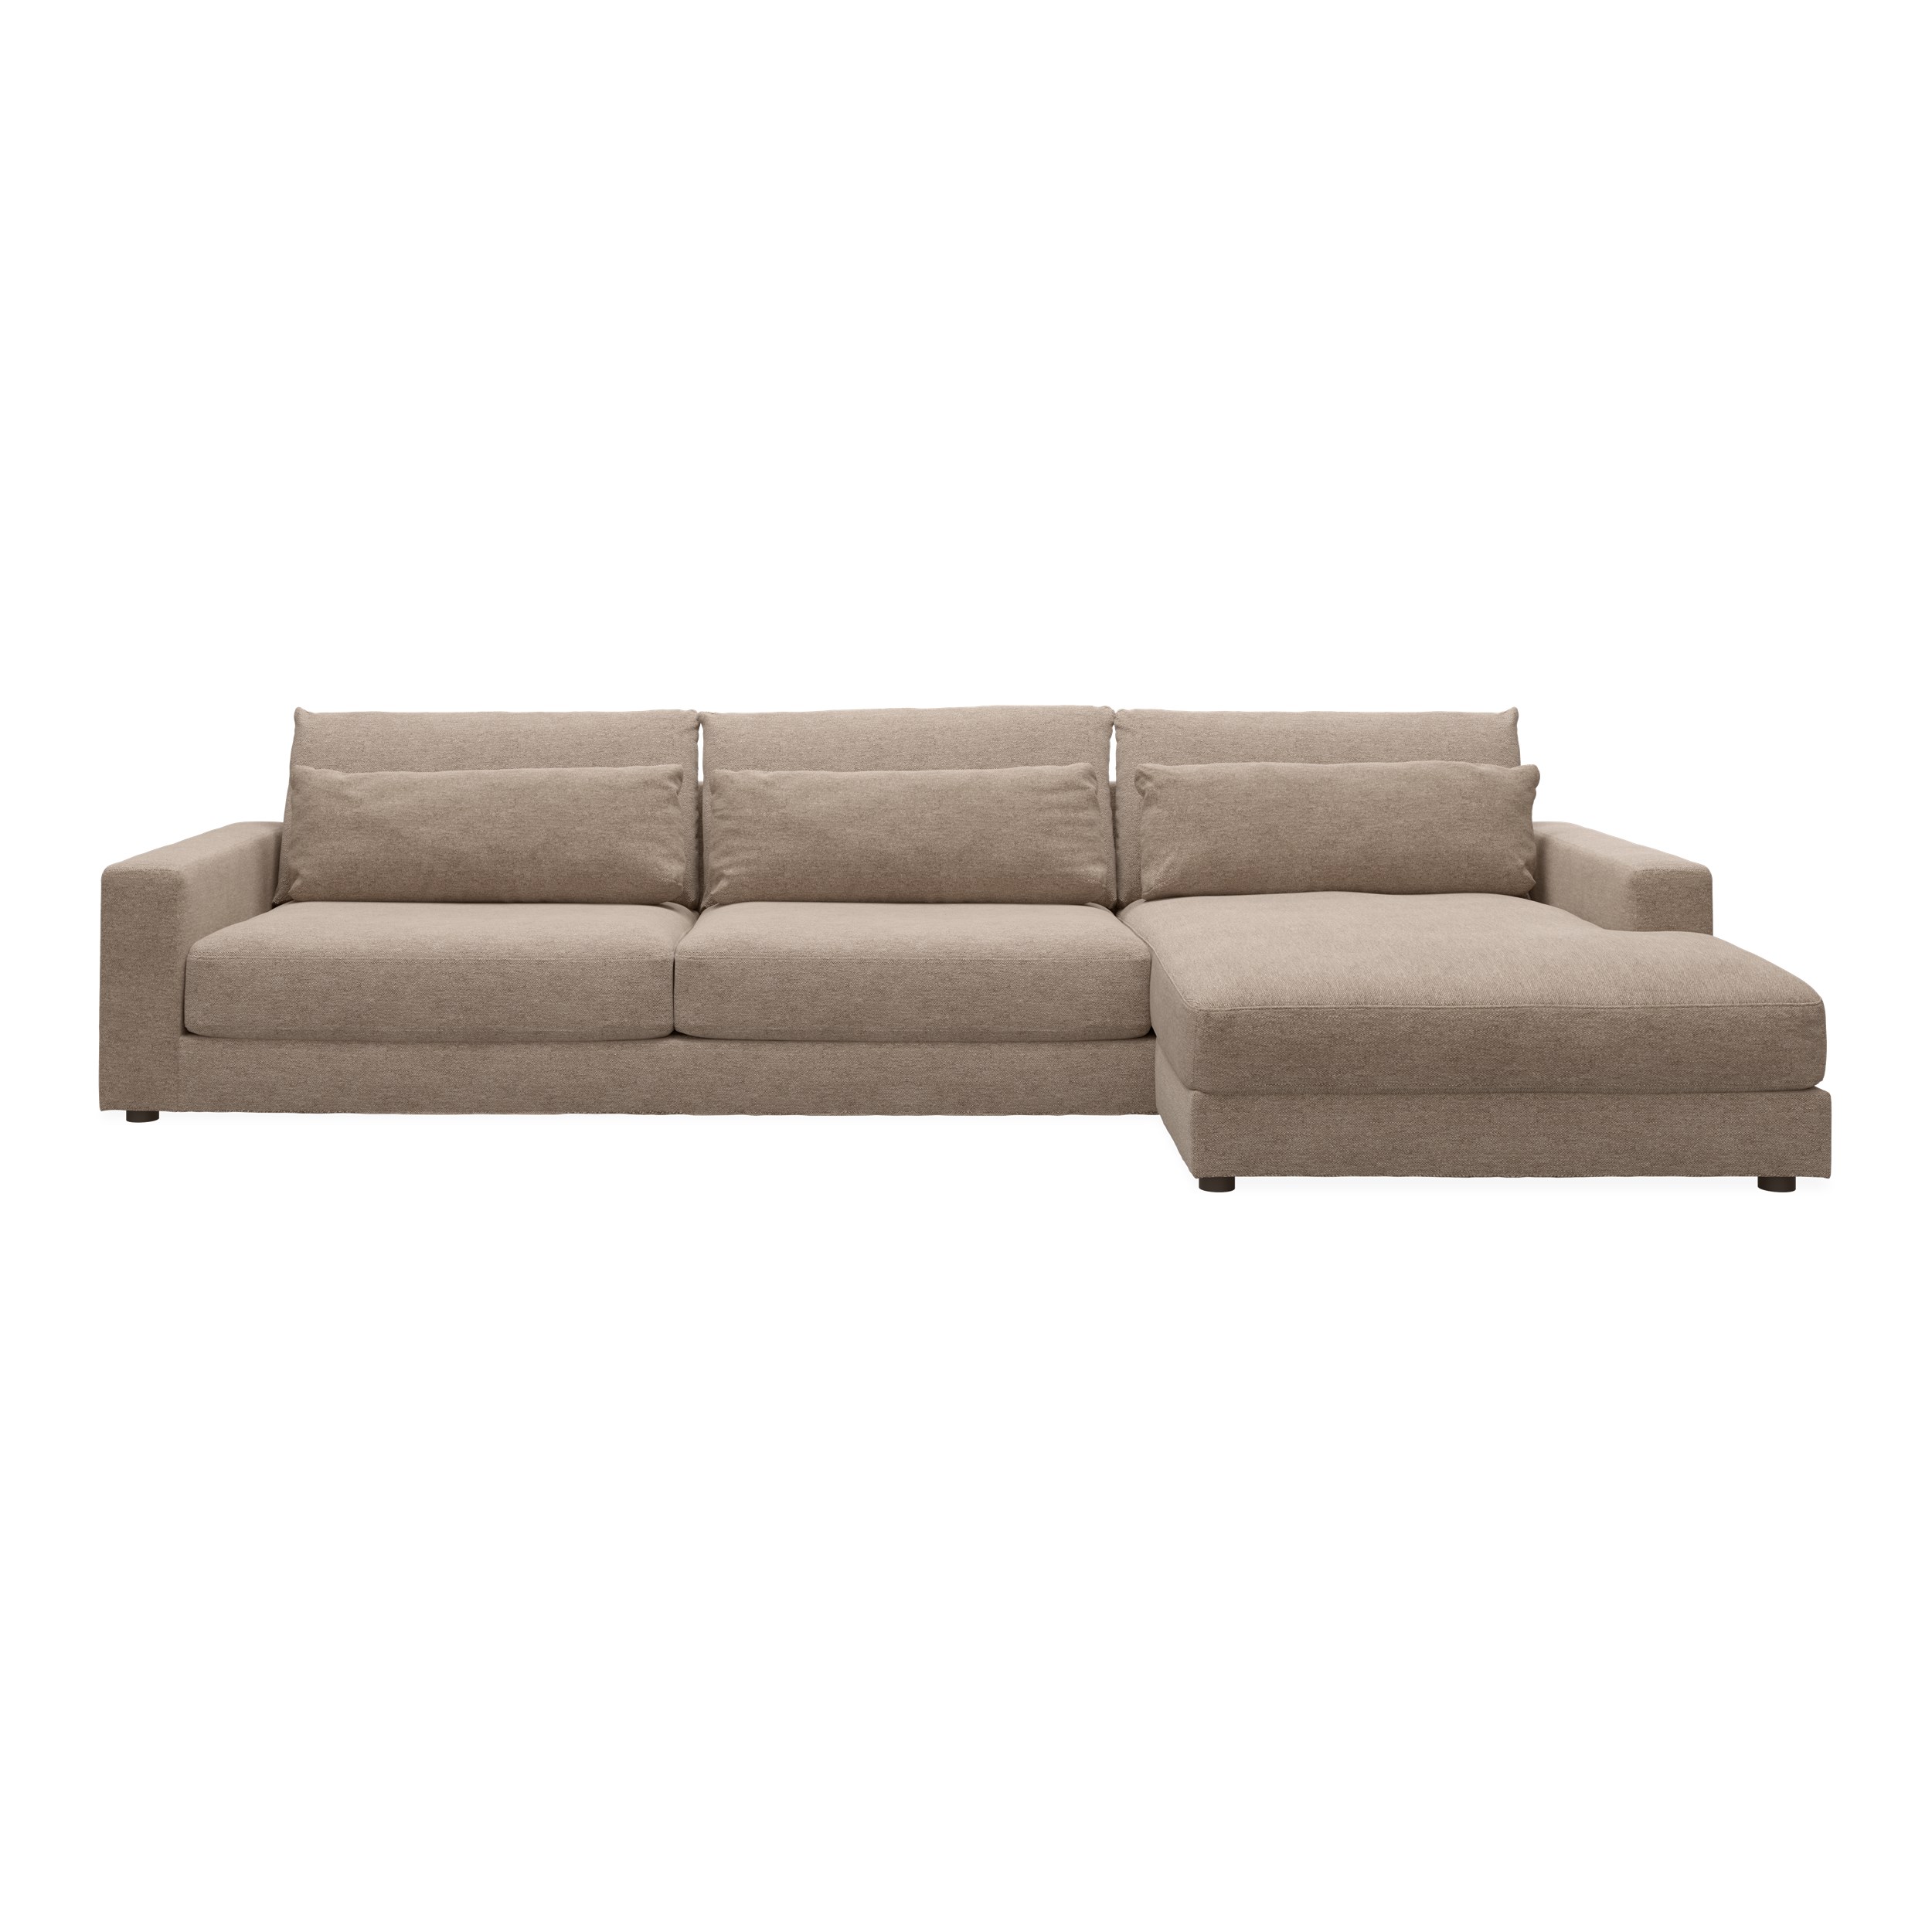 Halmstad högervänd soffa med schäslong - Skyland 05 grå/brun textil och ben i svart plast